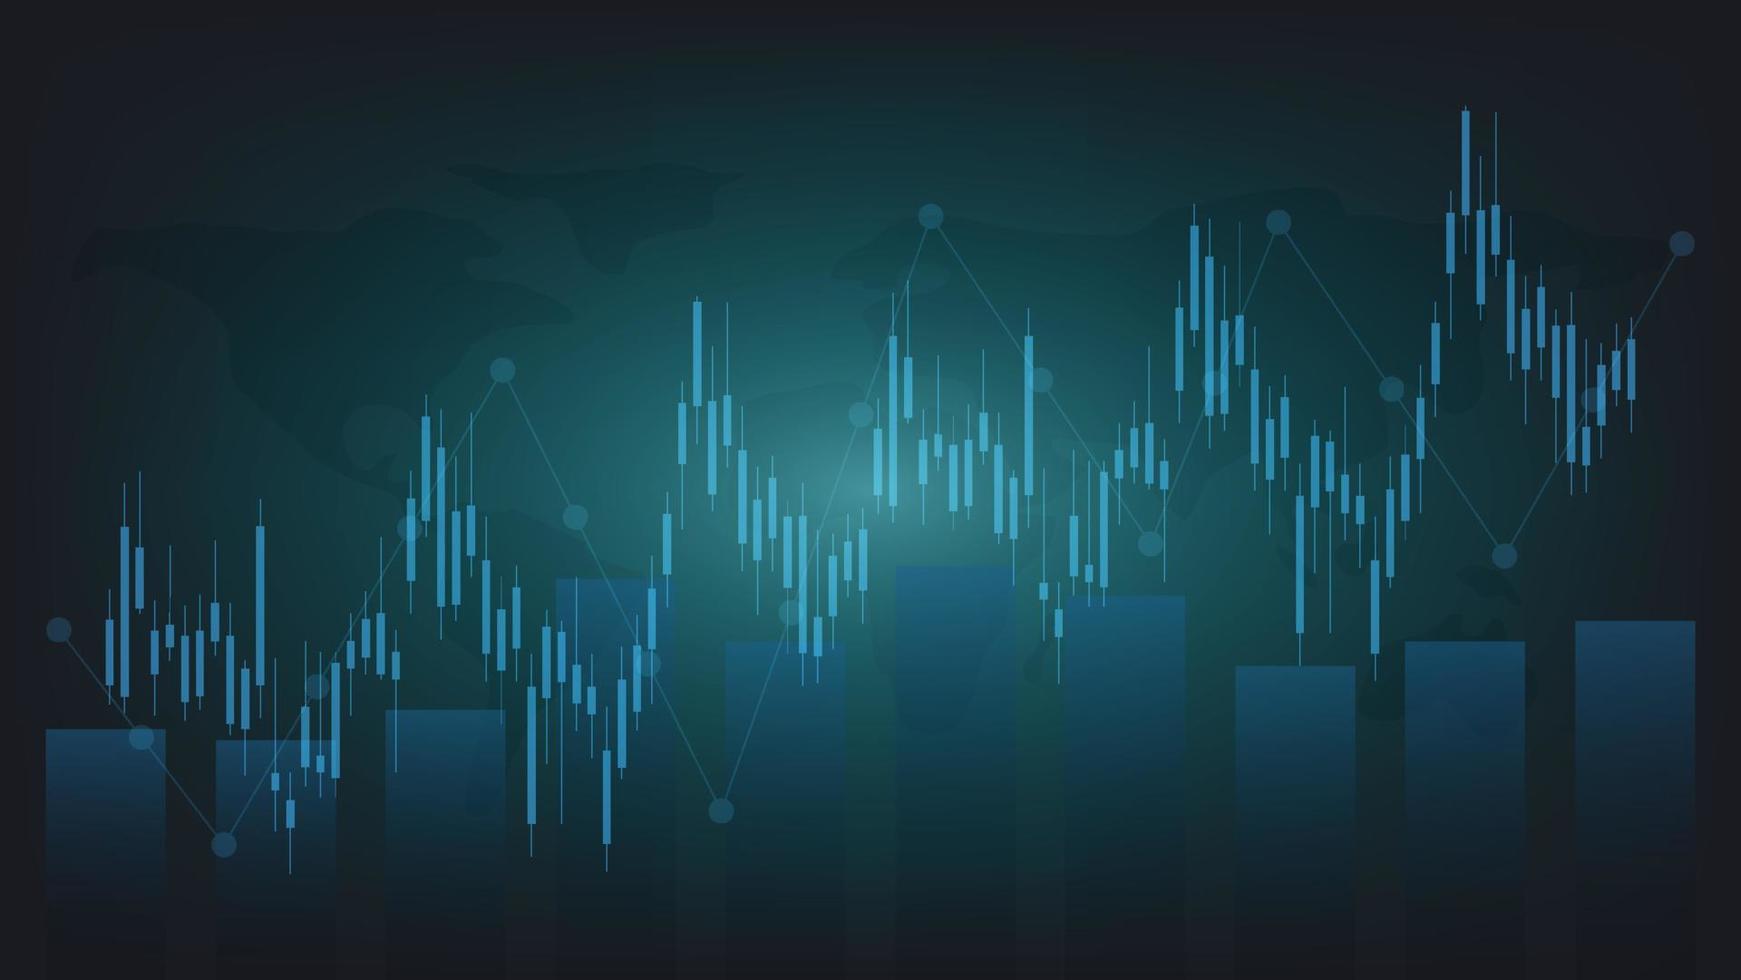 estatísticas de negócios financeiros com gráfico de barras e gráfico de velas mostram o preço do mercado de ações e câmbio em fundo verde escuro vetor